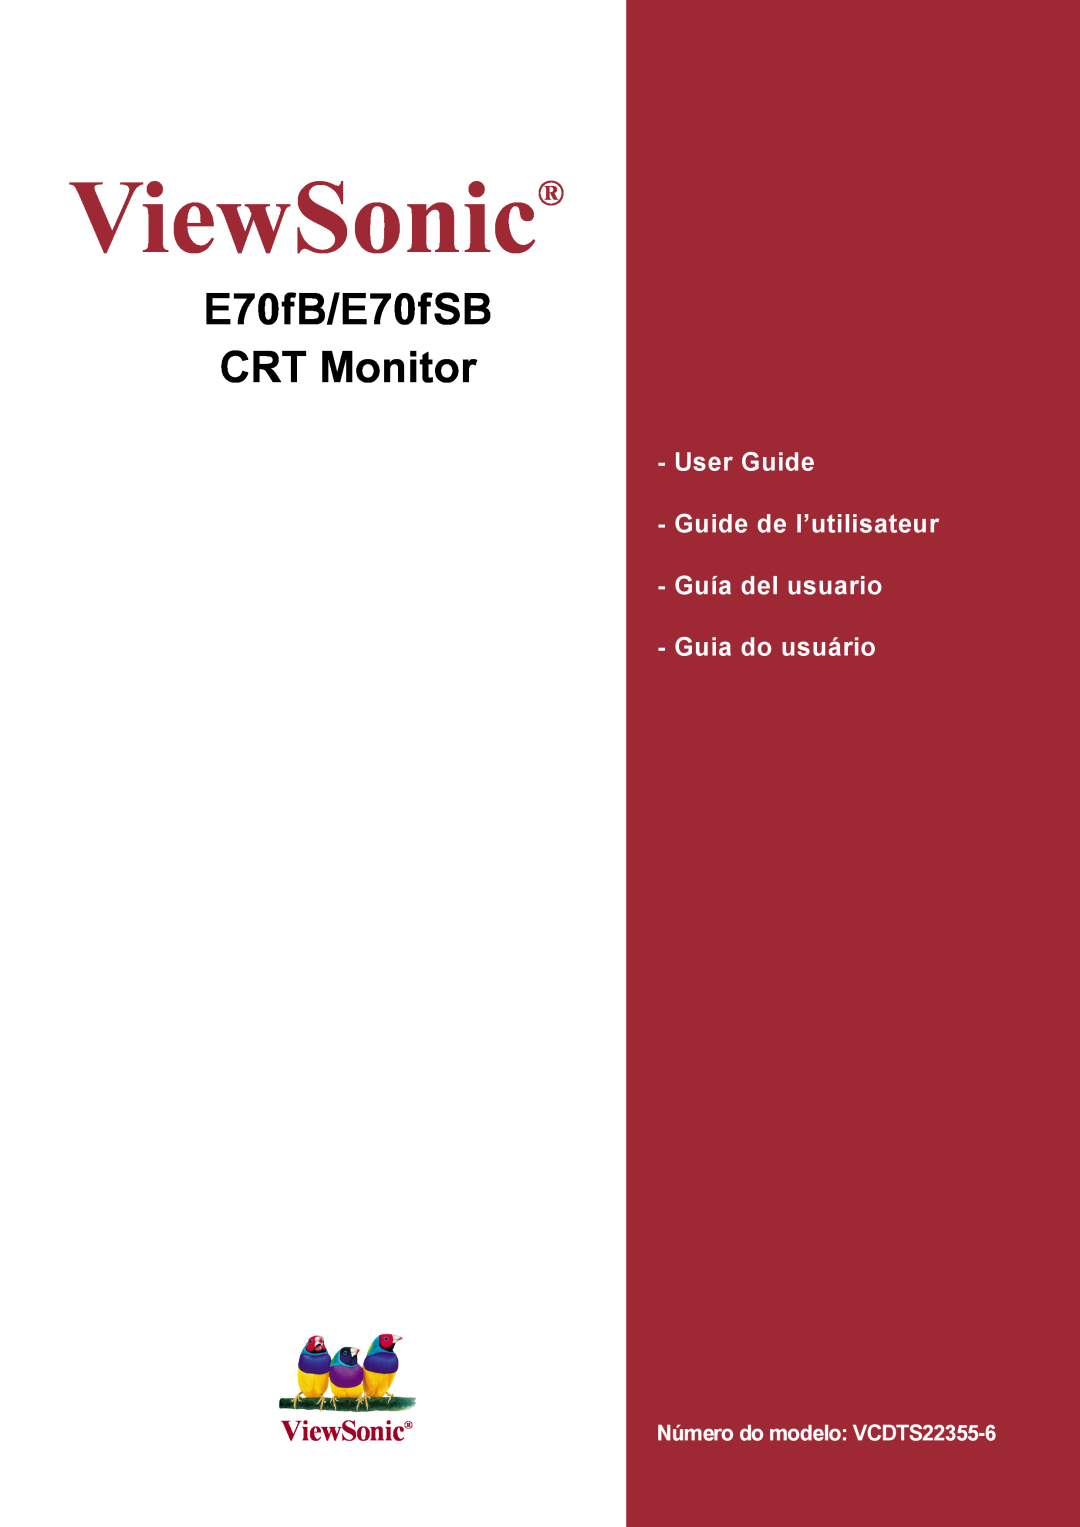 ViewSonic E70FSB manual ViewSonic, E70fB/E70fSB CRT Monitor, User Guide, Guide de l’utilisateur - Guía del usuario 